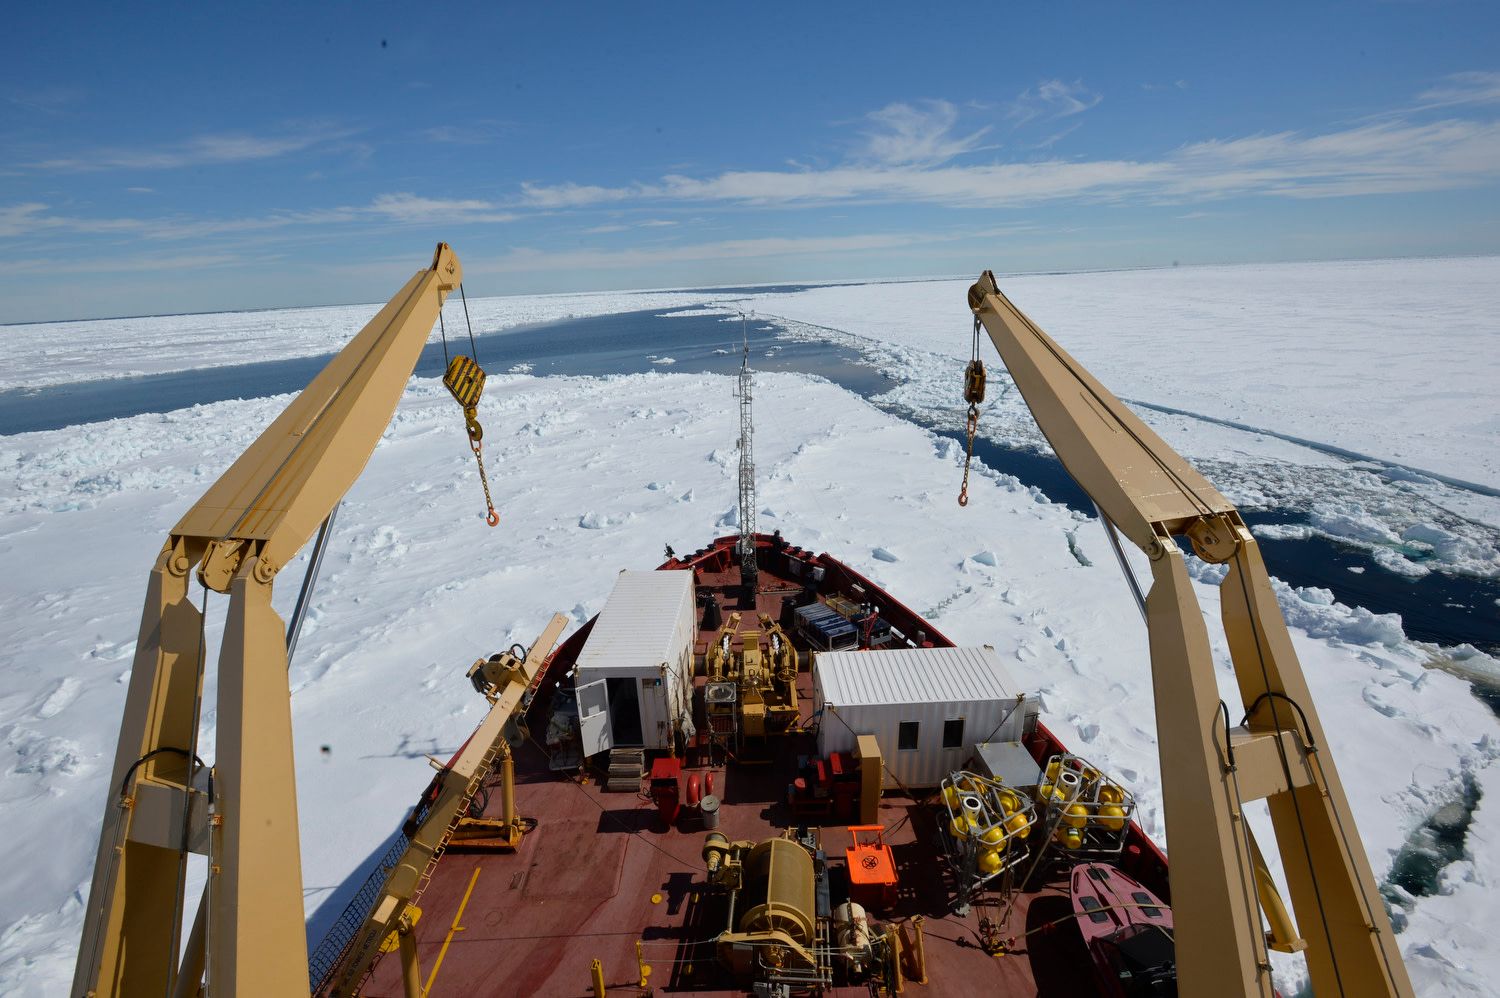 Baie d'Hudson, Canada, juin 2018. Le brise-glace de recherche canadien Amundsen se fraie un chemin dans les glaces épaisses de la baie d'Hudson. Il assure à la fois des missions de garde-côtes et de bâtiment scientifique : des équipes internationales de glaciologues, de biologistes et d'océanographes s'activent dans ses vingt-deux laboratoires de bord.